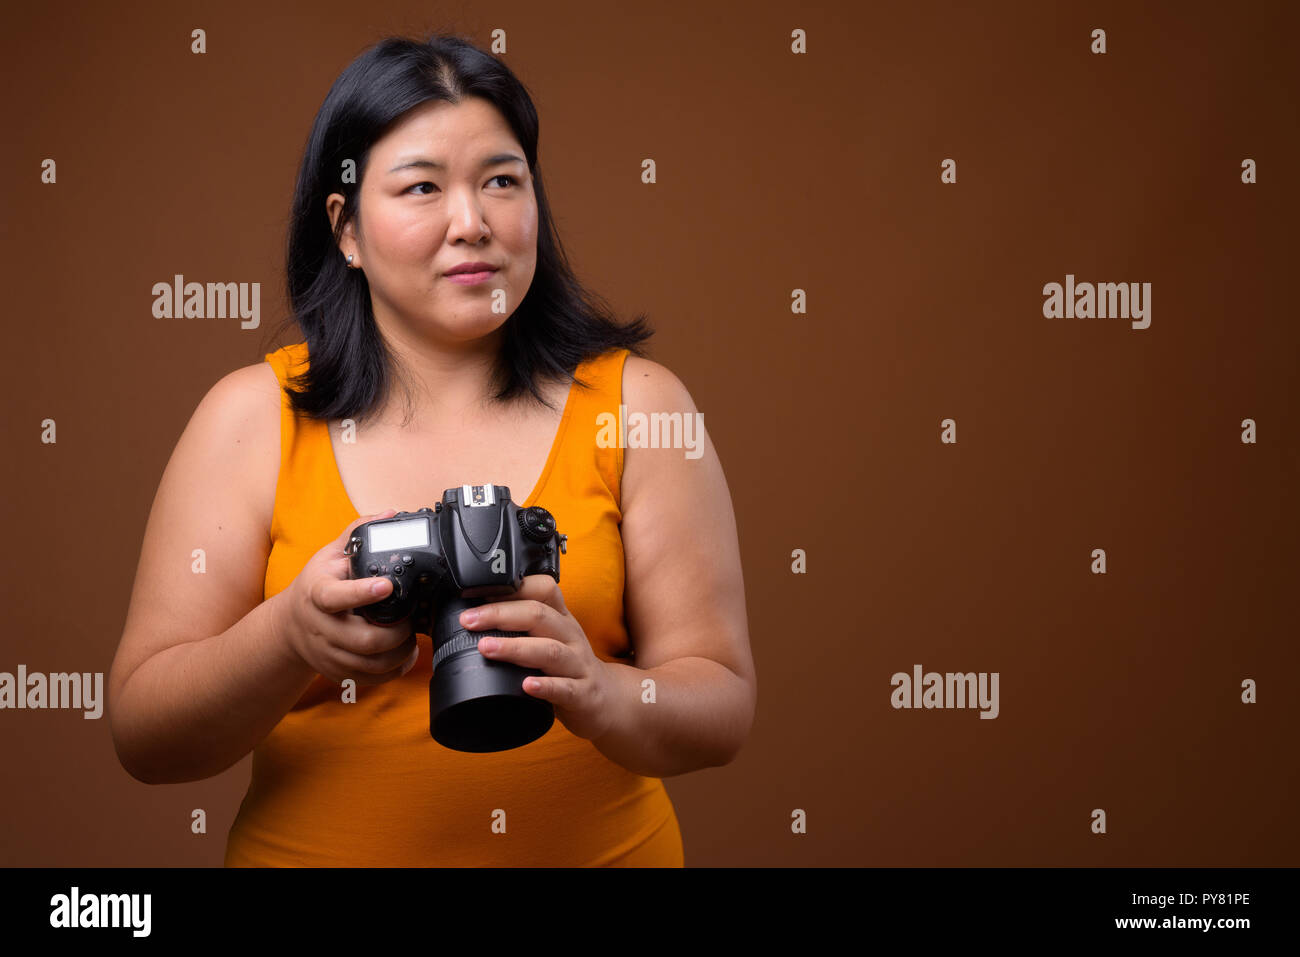 Bellissimo il sovrappeso donna asiatica fotografo pensando e progettando Foto Stock